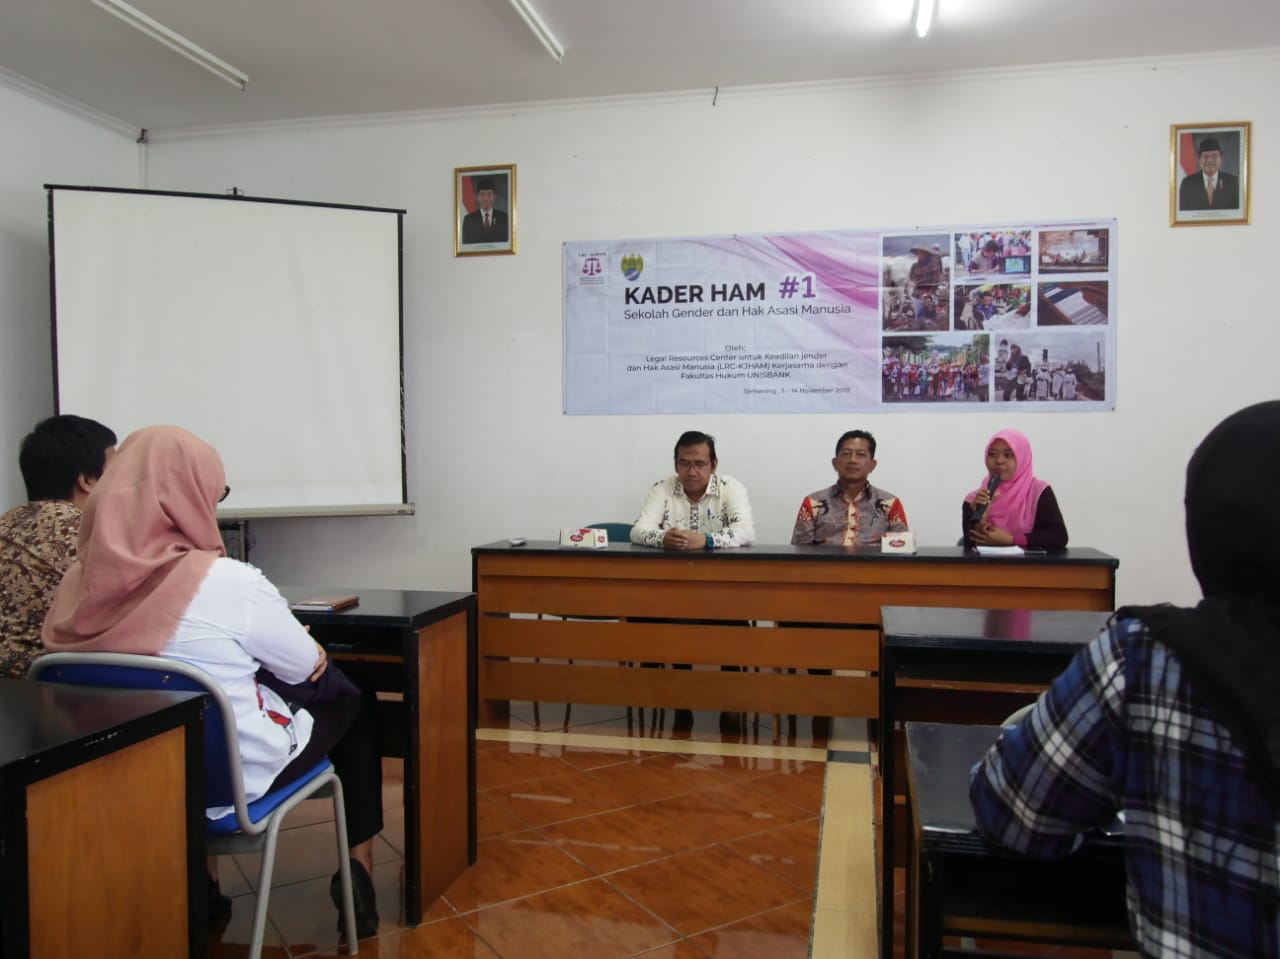 Bersama LRC- KJHAM, FH Unisbank Gelar Pelatihan Sekolah Gender dan HAM